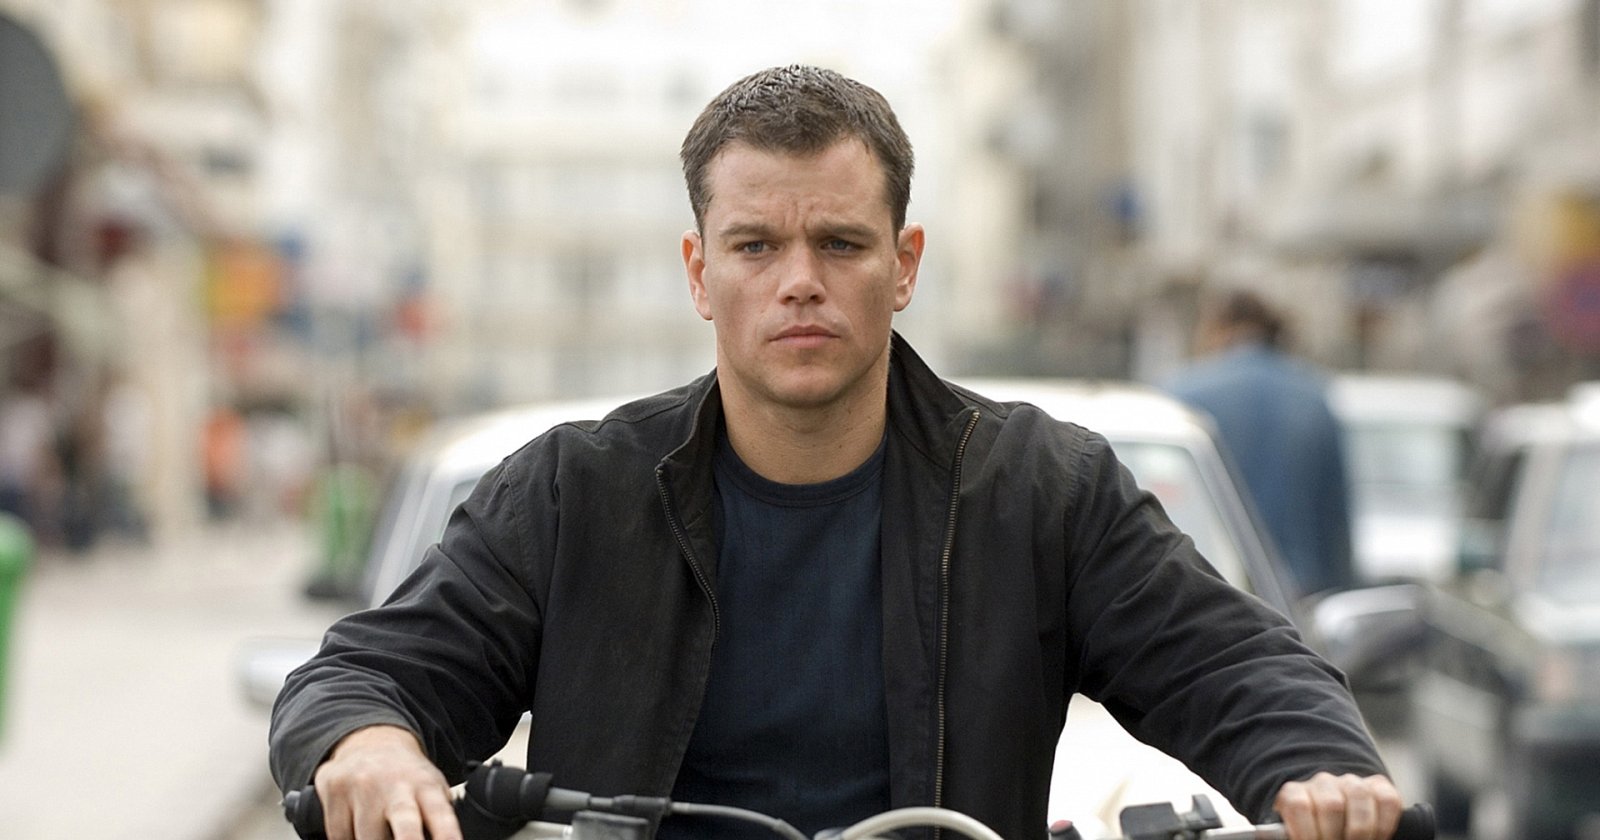 ‘Jason Bourne’ ภาคใหม่ กำลังได้รับการพัฒนาโดยผู้กำกับ ‘All Quiet of the Western Front’